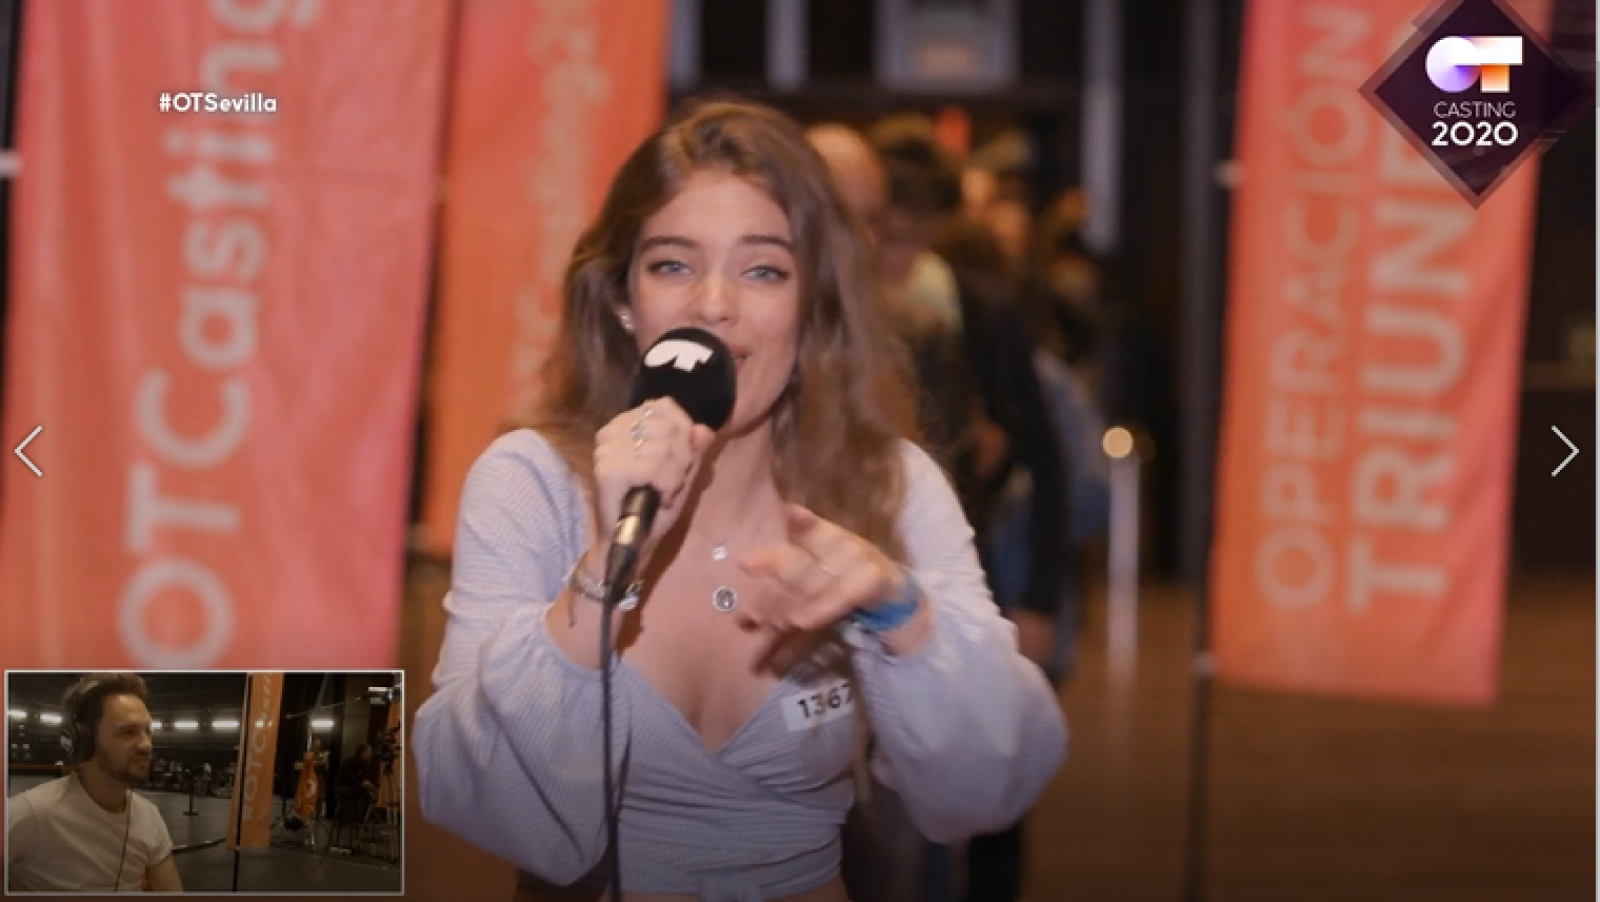 Una chica que canta una canción pop, "Swing" de Danny Ocean, y tiene los ojos azules consigue la pegatina en la Fase 1 del casting OT 2020 en Sevilla